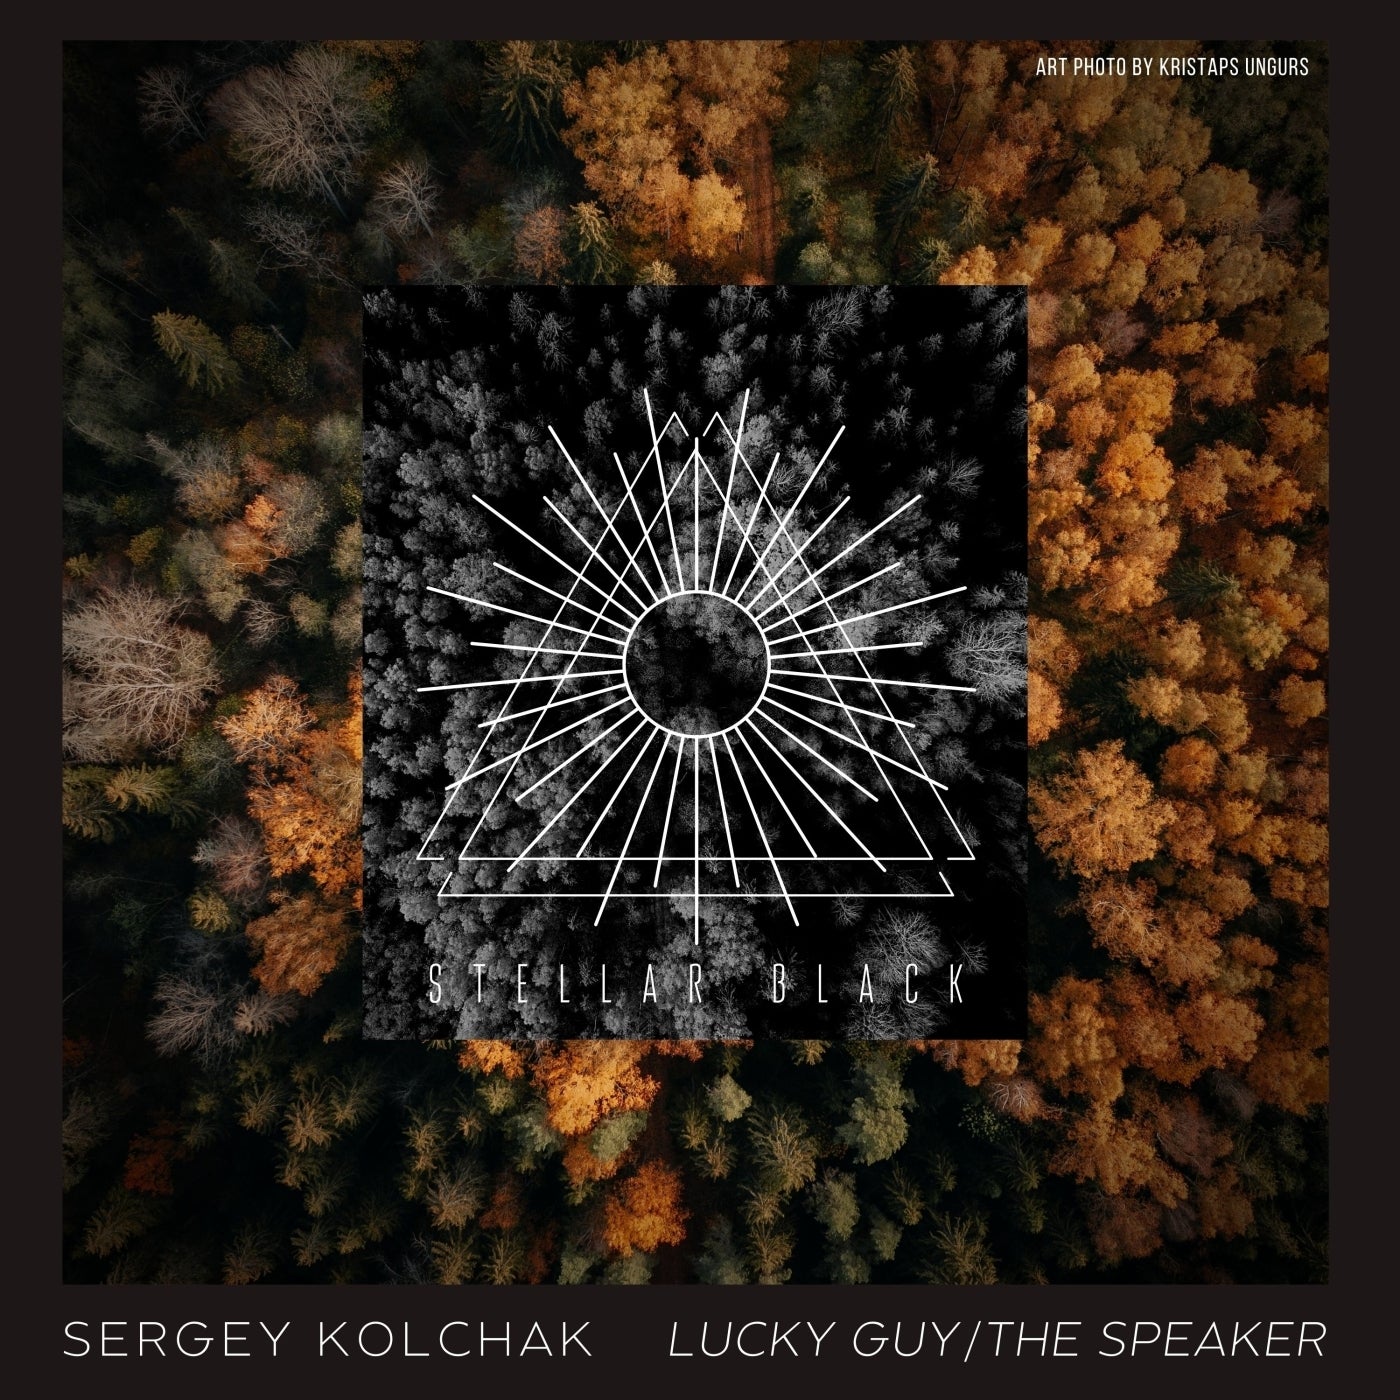 Lucky Guy/The Speaker